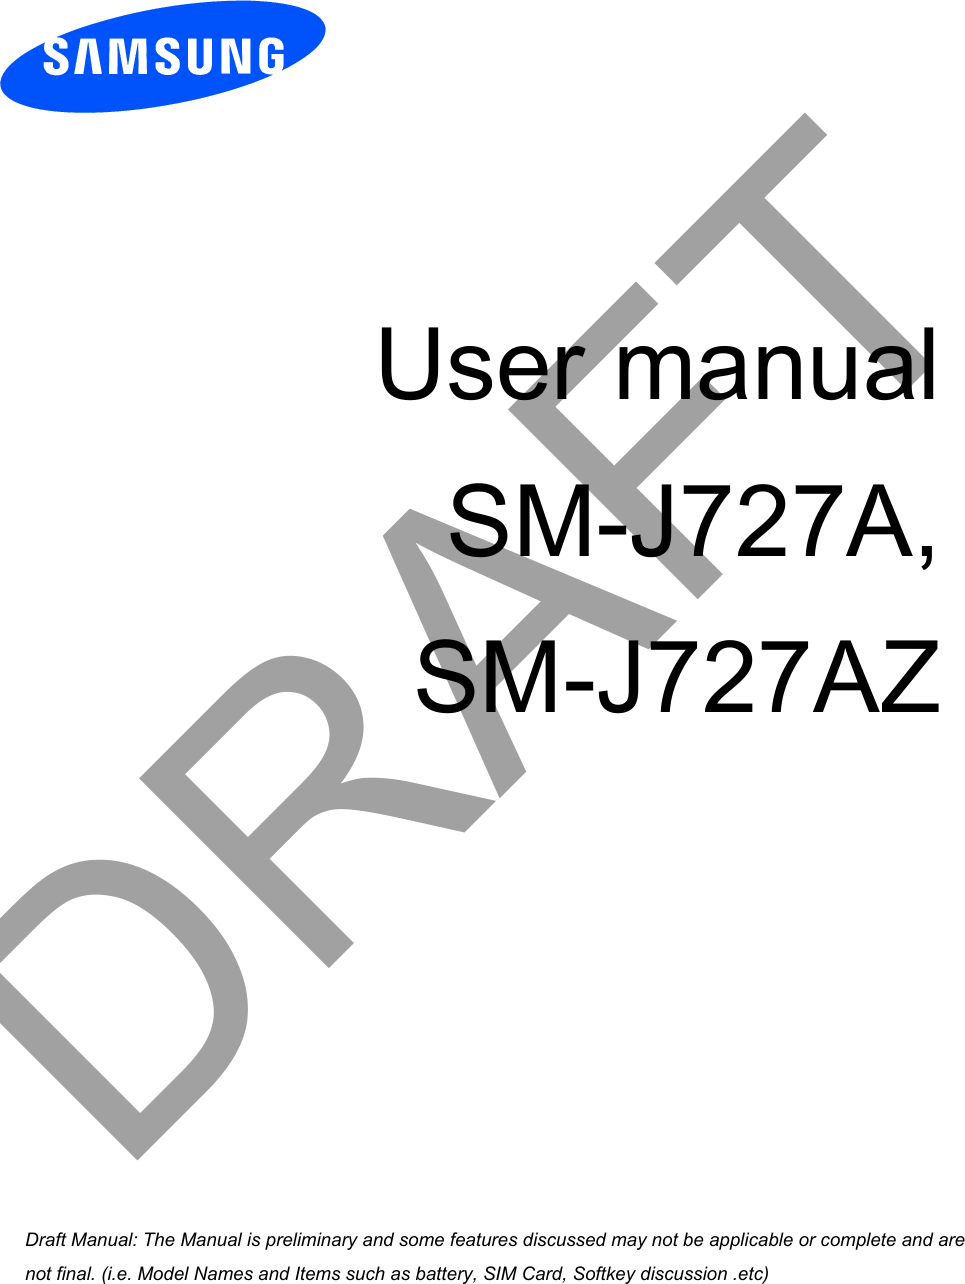 User manual SM-J727A,SM-J727AZDRAFTa ana  ana  na and  a dd a n  aa   and a n na  d a and   a a  ad  dn 